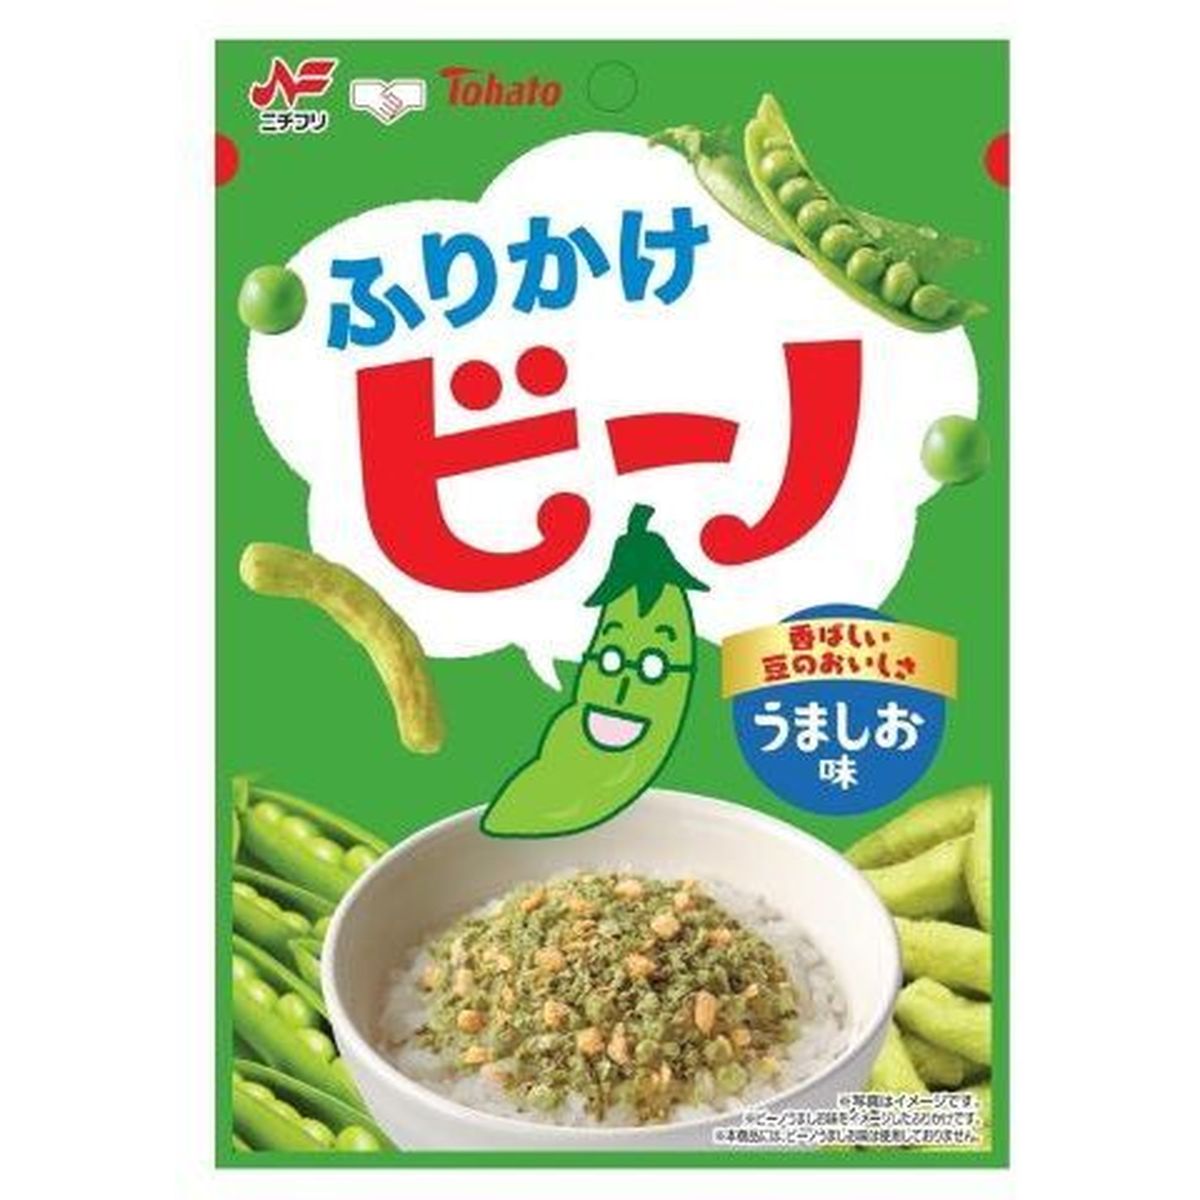 【10個入リ】ニチフリ ビーノ ウマシオ味 フリカケ 20g